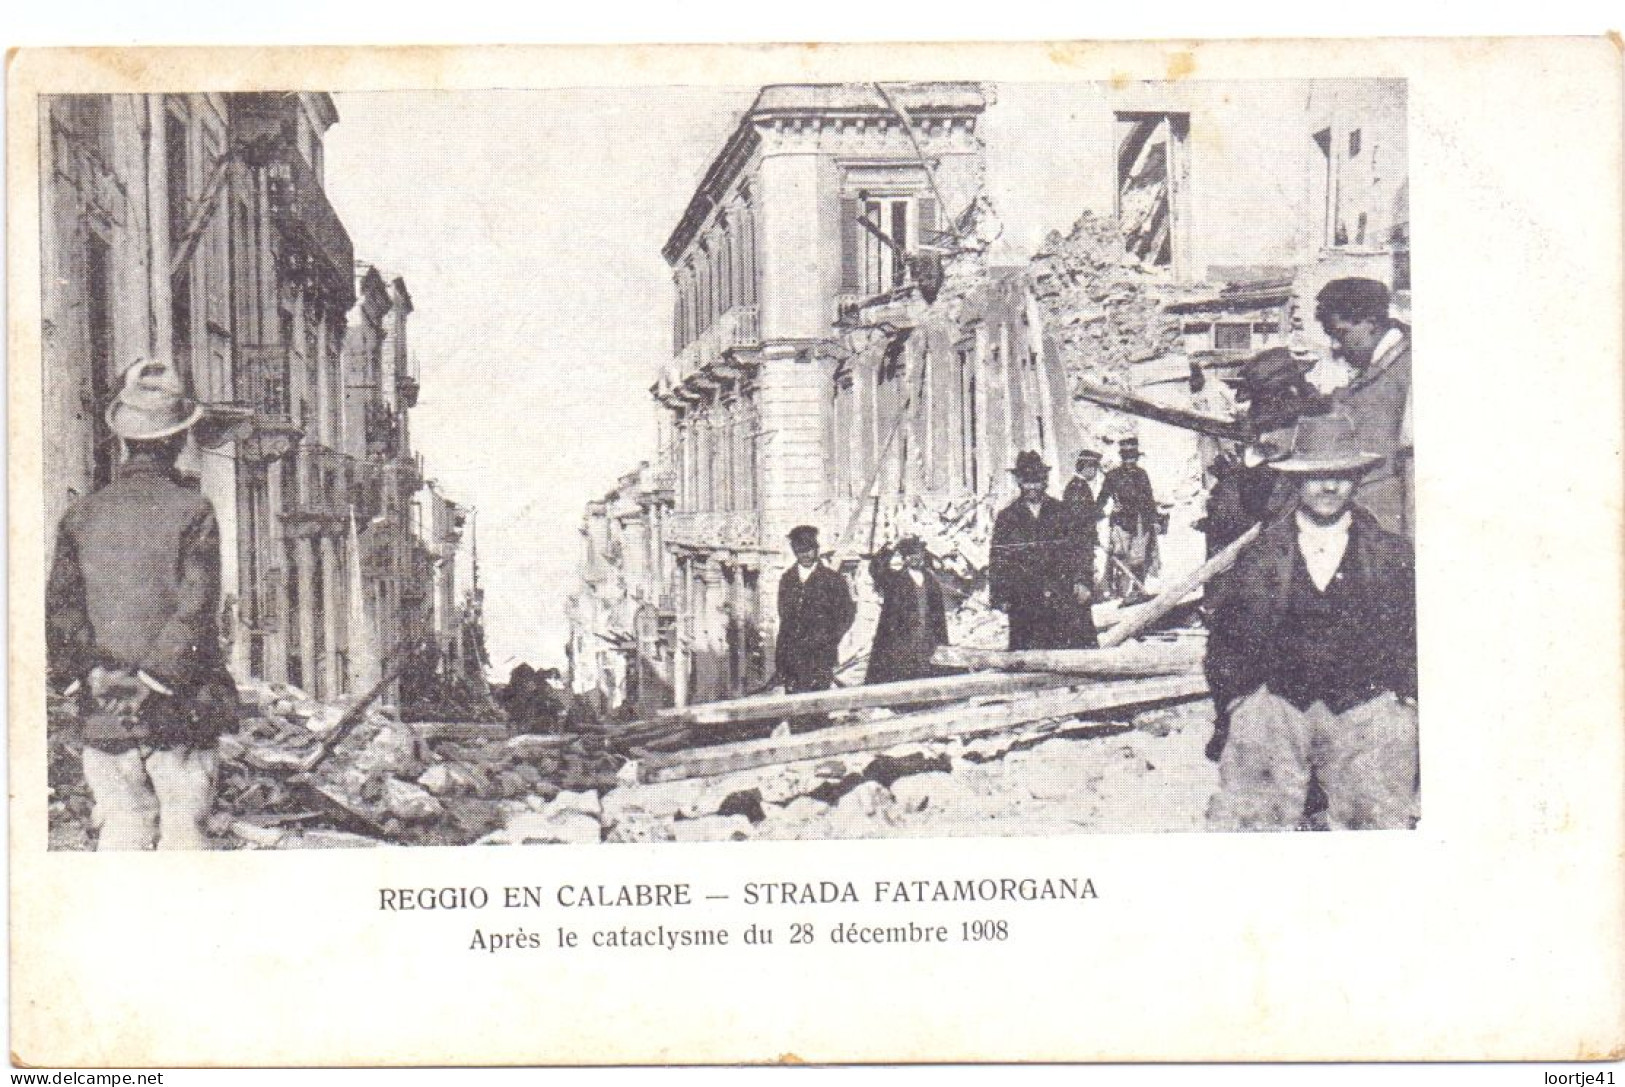 PK - Catastrofe Catastrophe - Reggio En Calabre - Strada Fatamorgana - Après Le Catalysme 1908 - Katastrophen